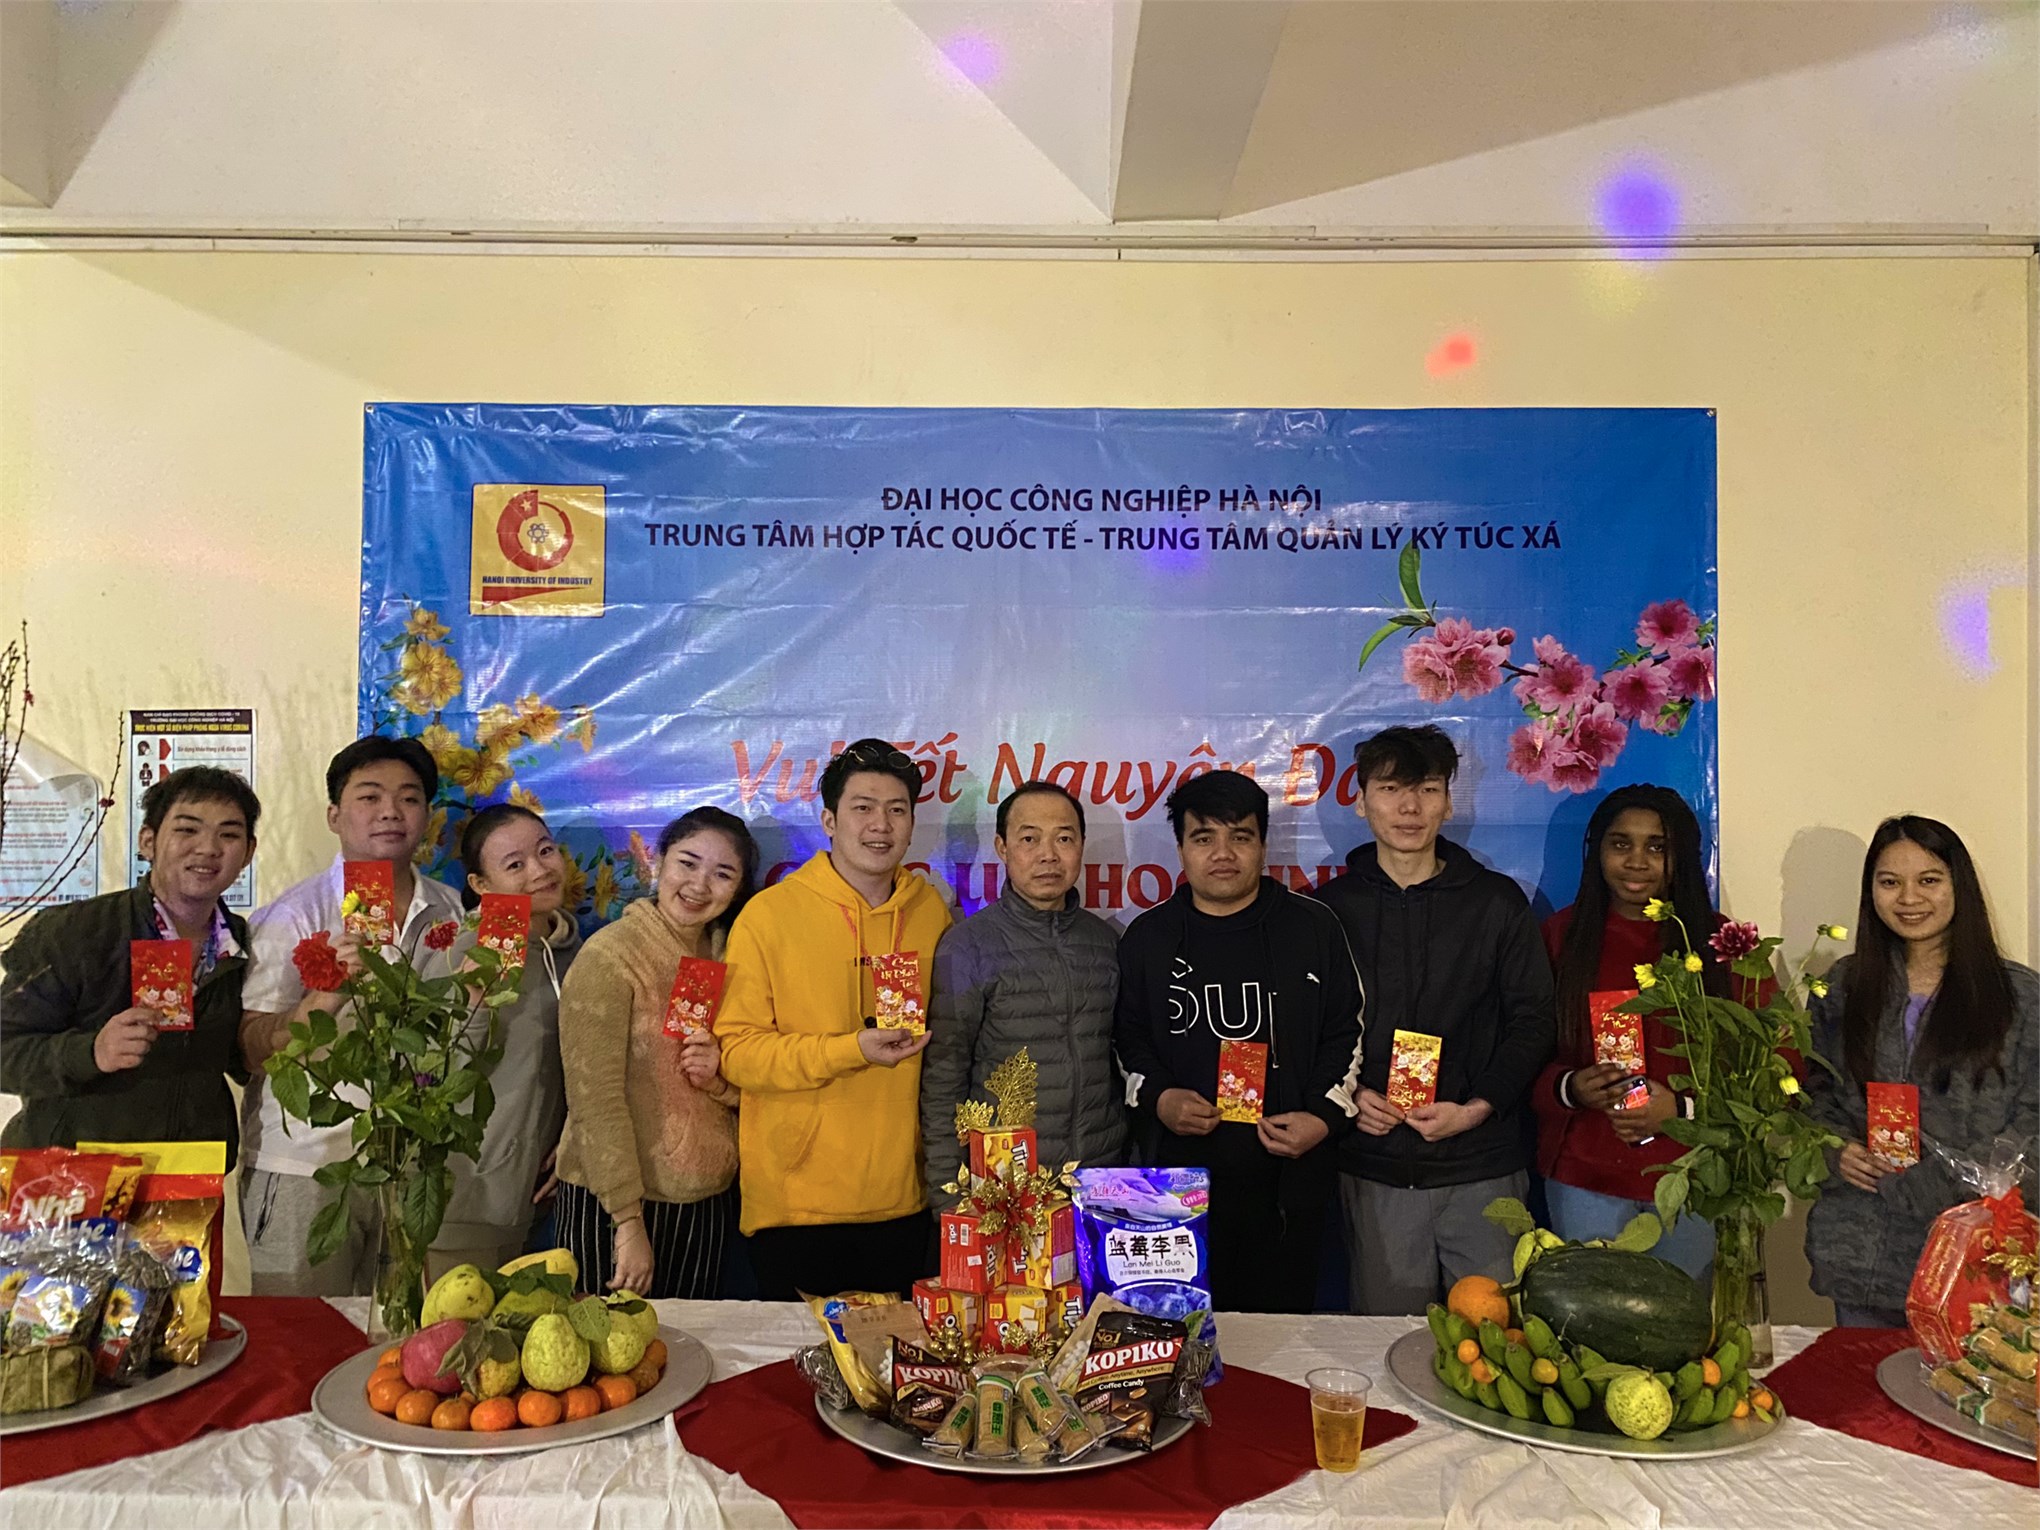 Đại học Công nghiệp Hà Nội tổ chức Tết cho lưu học sinh quốc tế